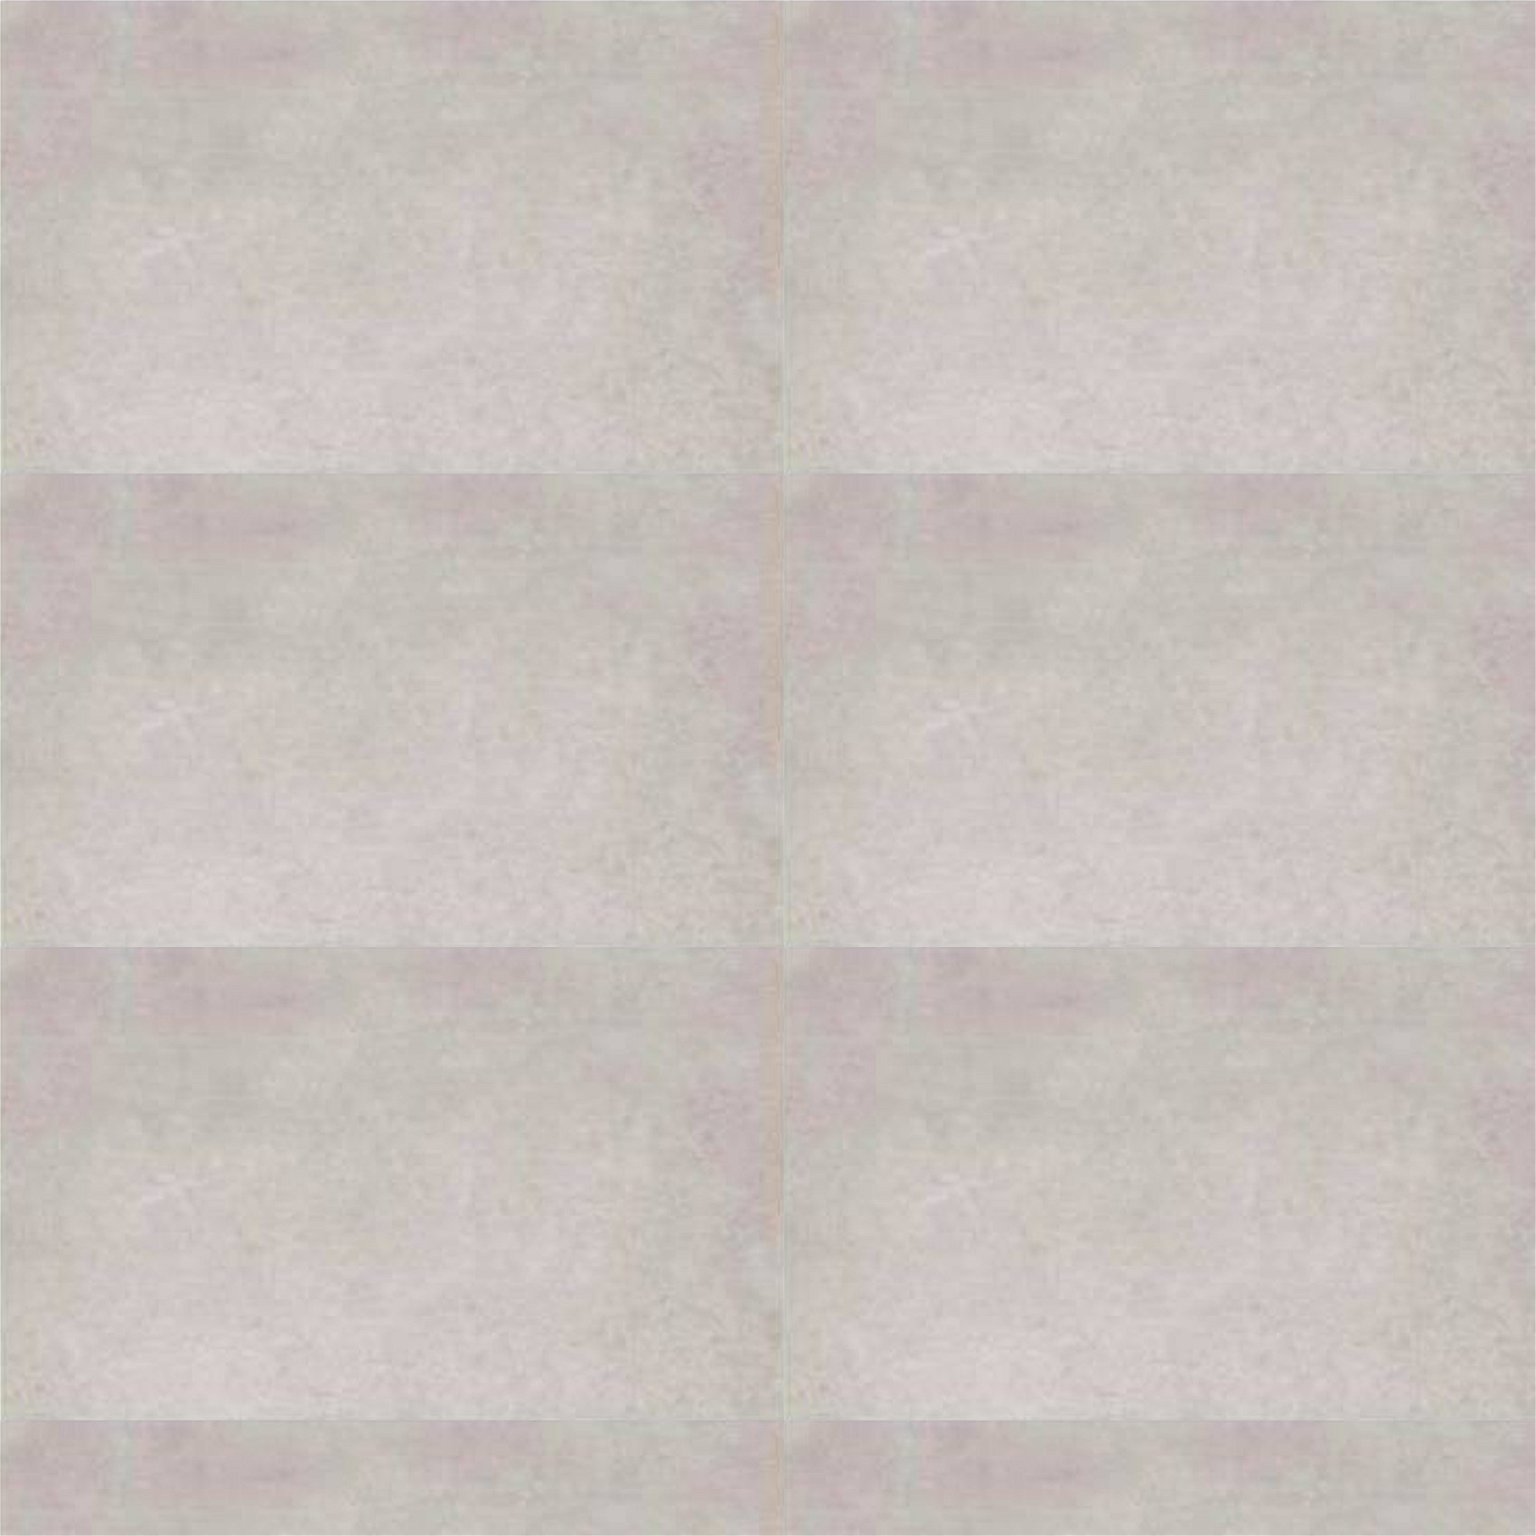 Keraminės sienų plytelės MAINE GRIS, 33,3 x 55 cm